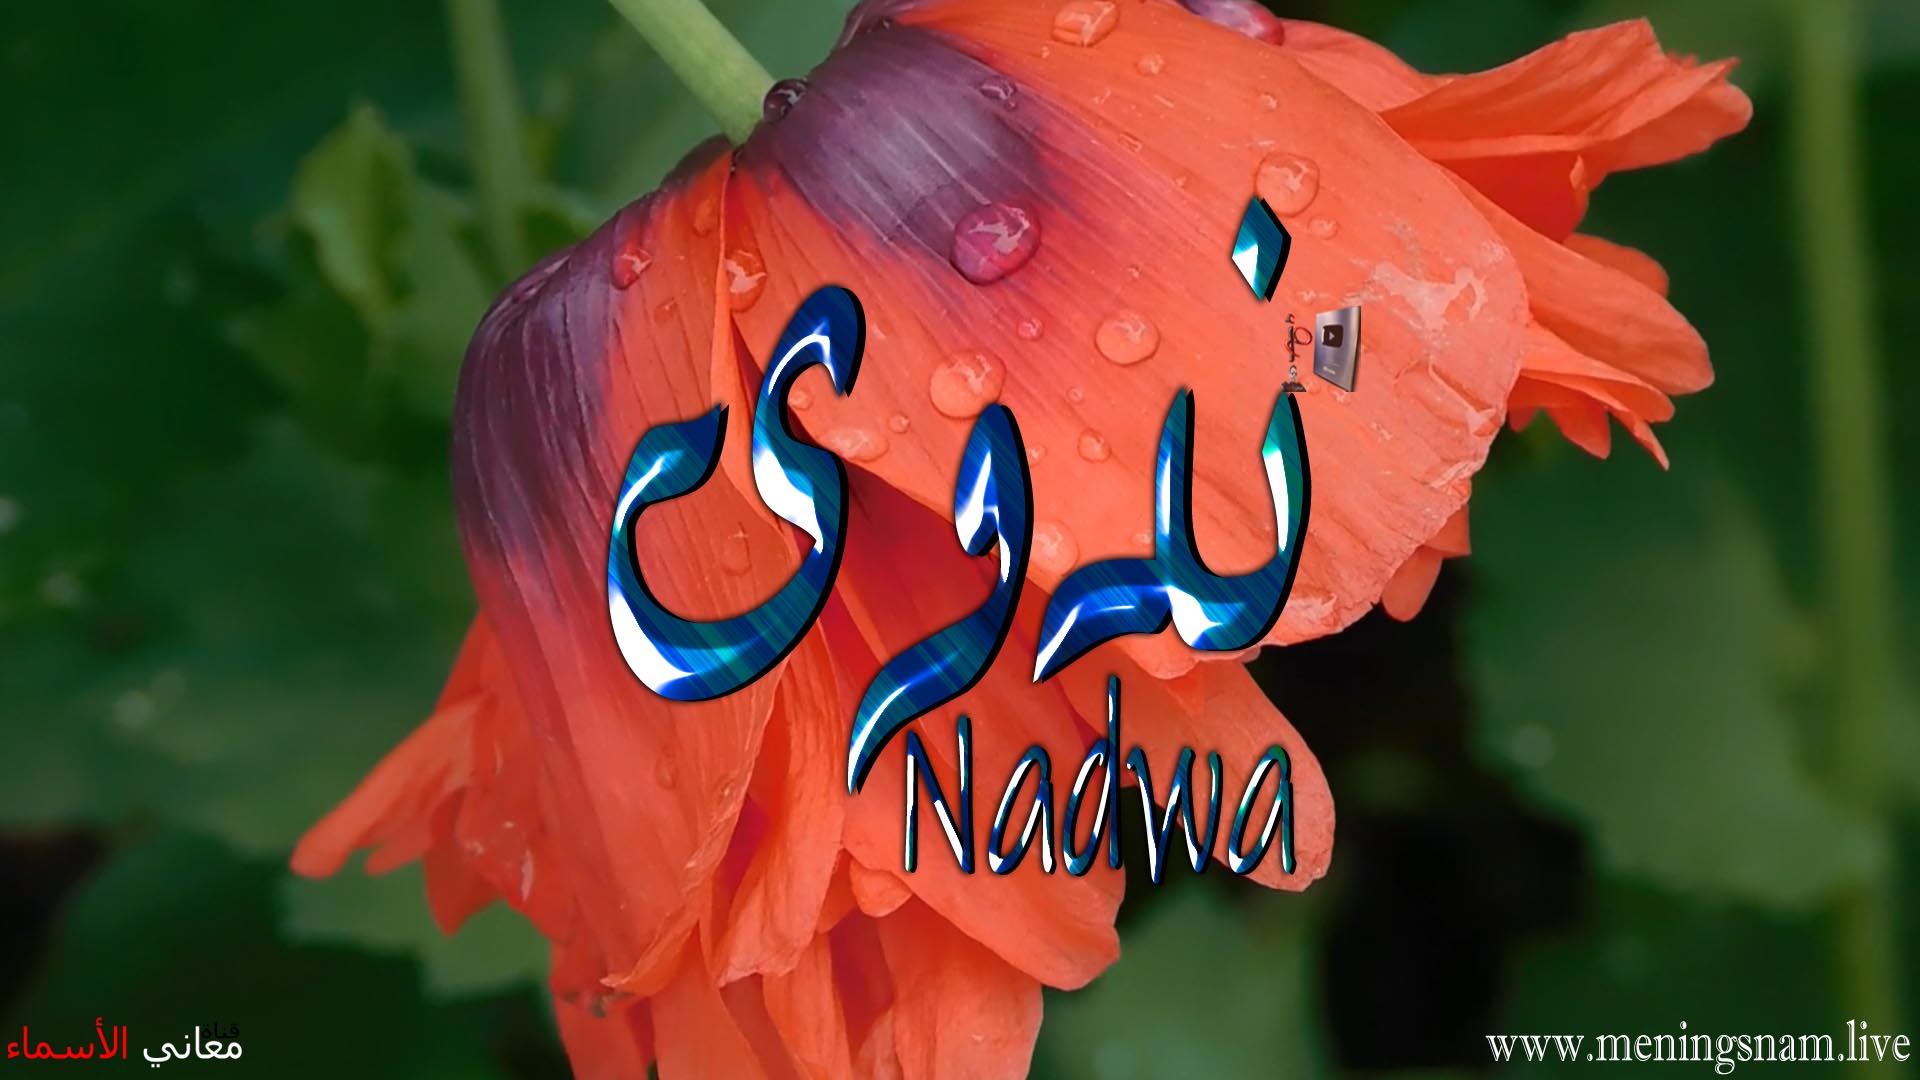 معنى اسم, ندوى, وصفات, حاملة, هذا الاسم, Nadwa,